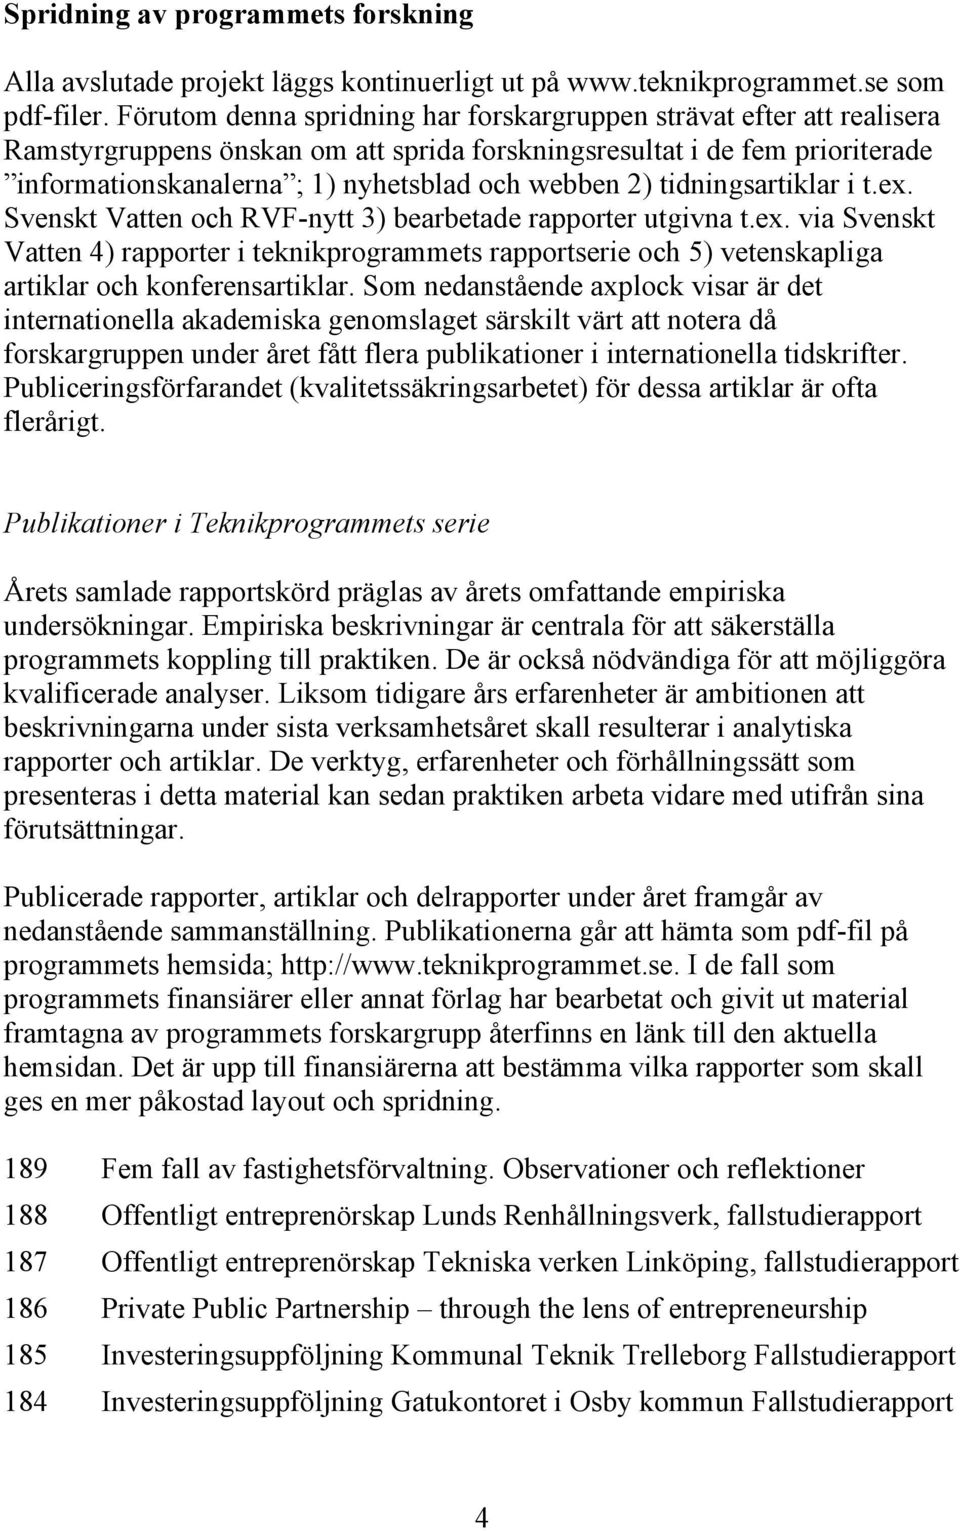 2) tidningsartiklar i t.ex. Svenskt Vatten och RVF-nytt 3) bearbetade rapporter utgivna t.ex. via Svenskt Vatten 4) rapporter i teknikprogrammets rapportserie och 5) vetenskapliga artiklar och konferensartiklar.